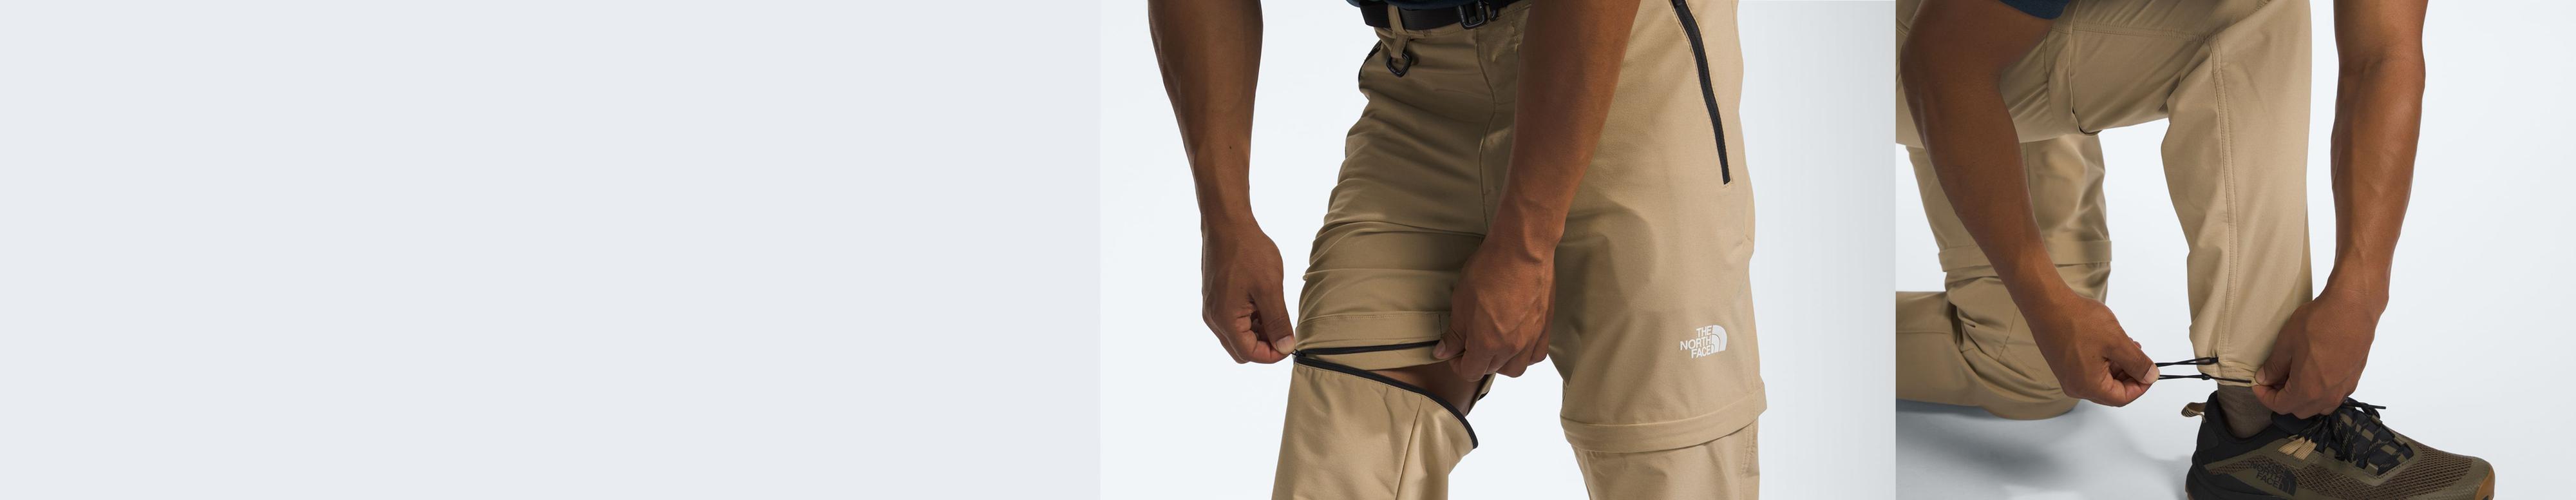 Une image divisée montrant l'adjustabilité et la fonctionnalité détachable du pantalon Paramount Pro.